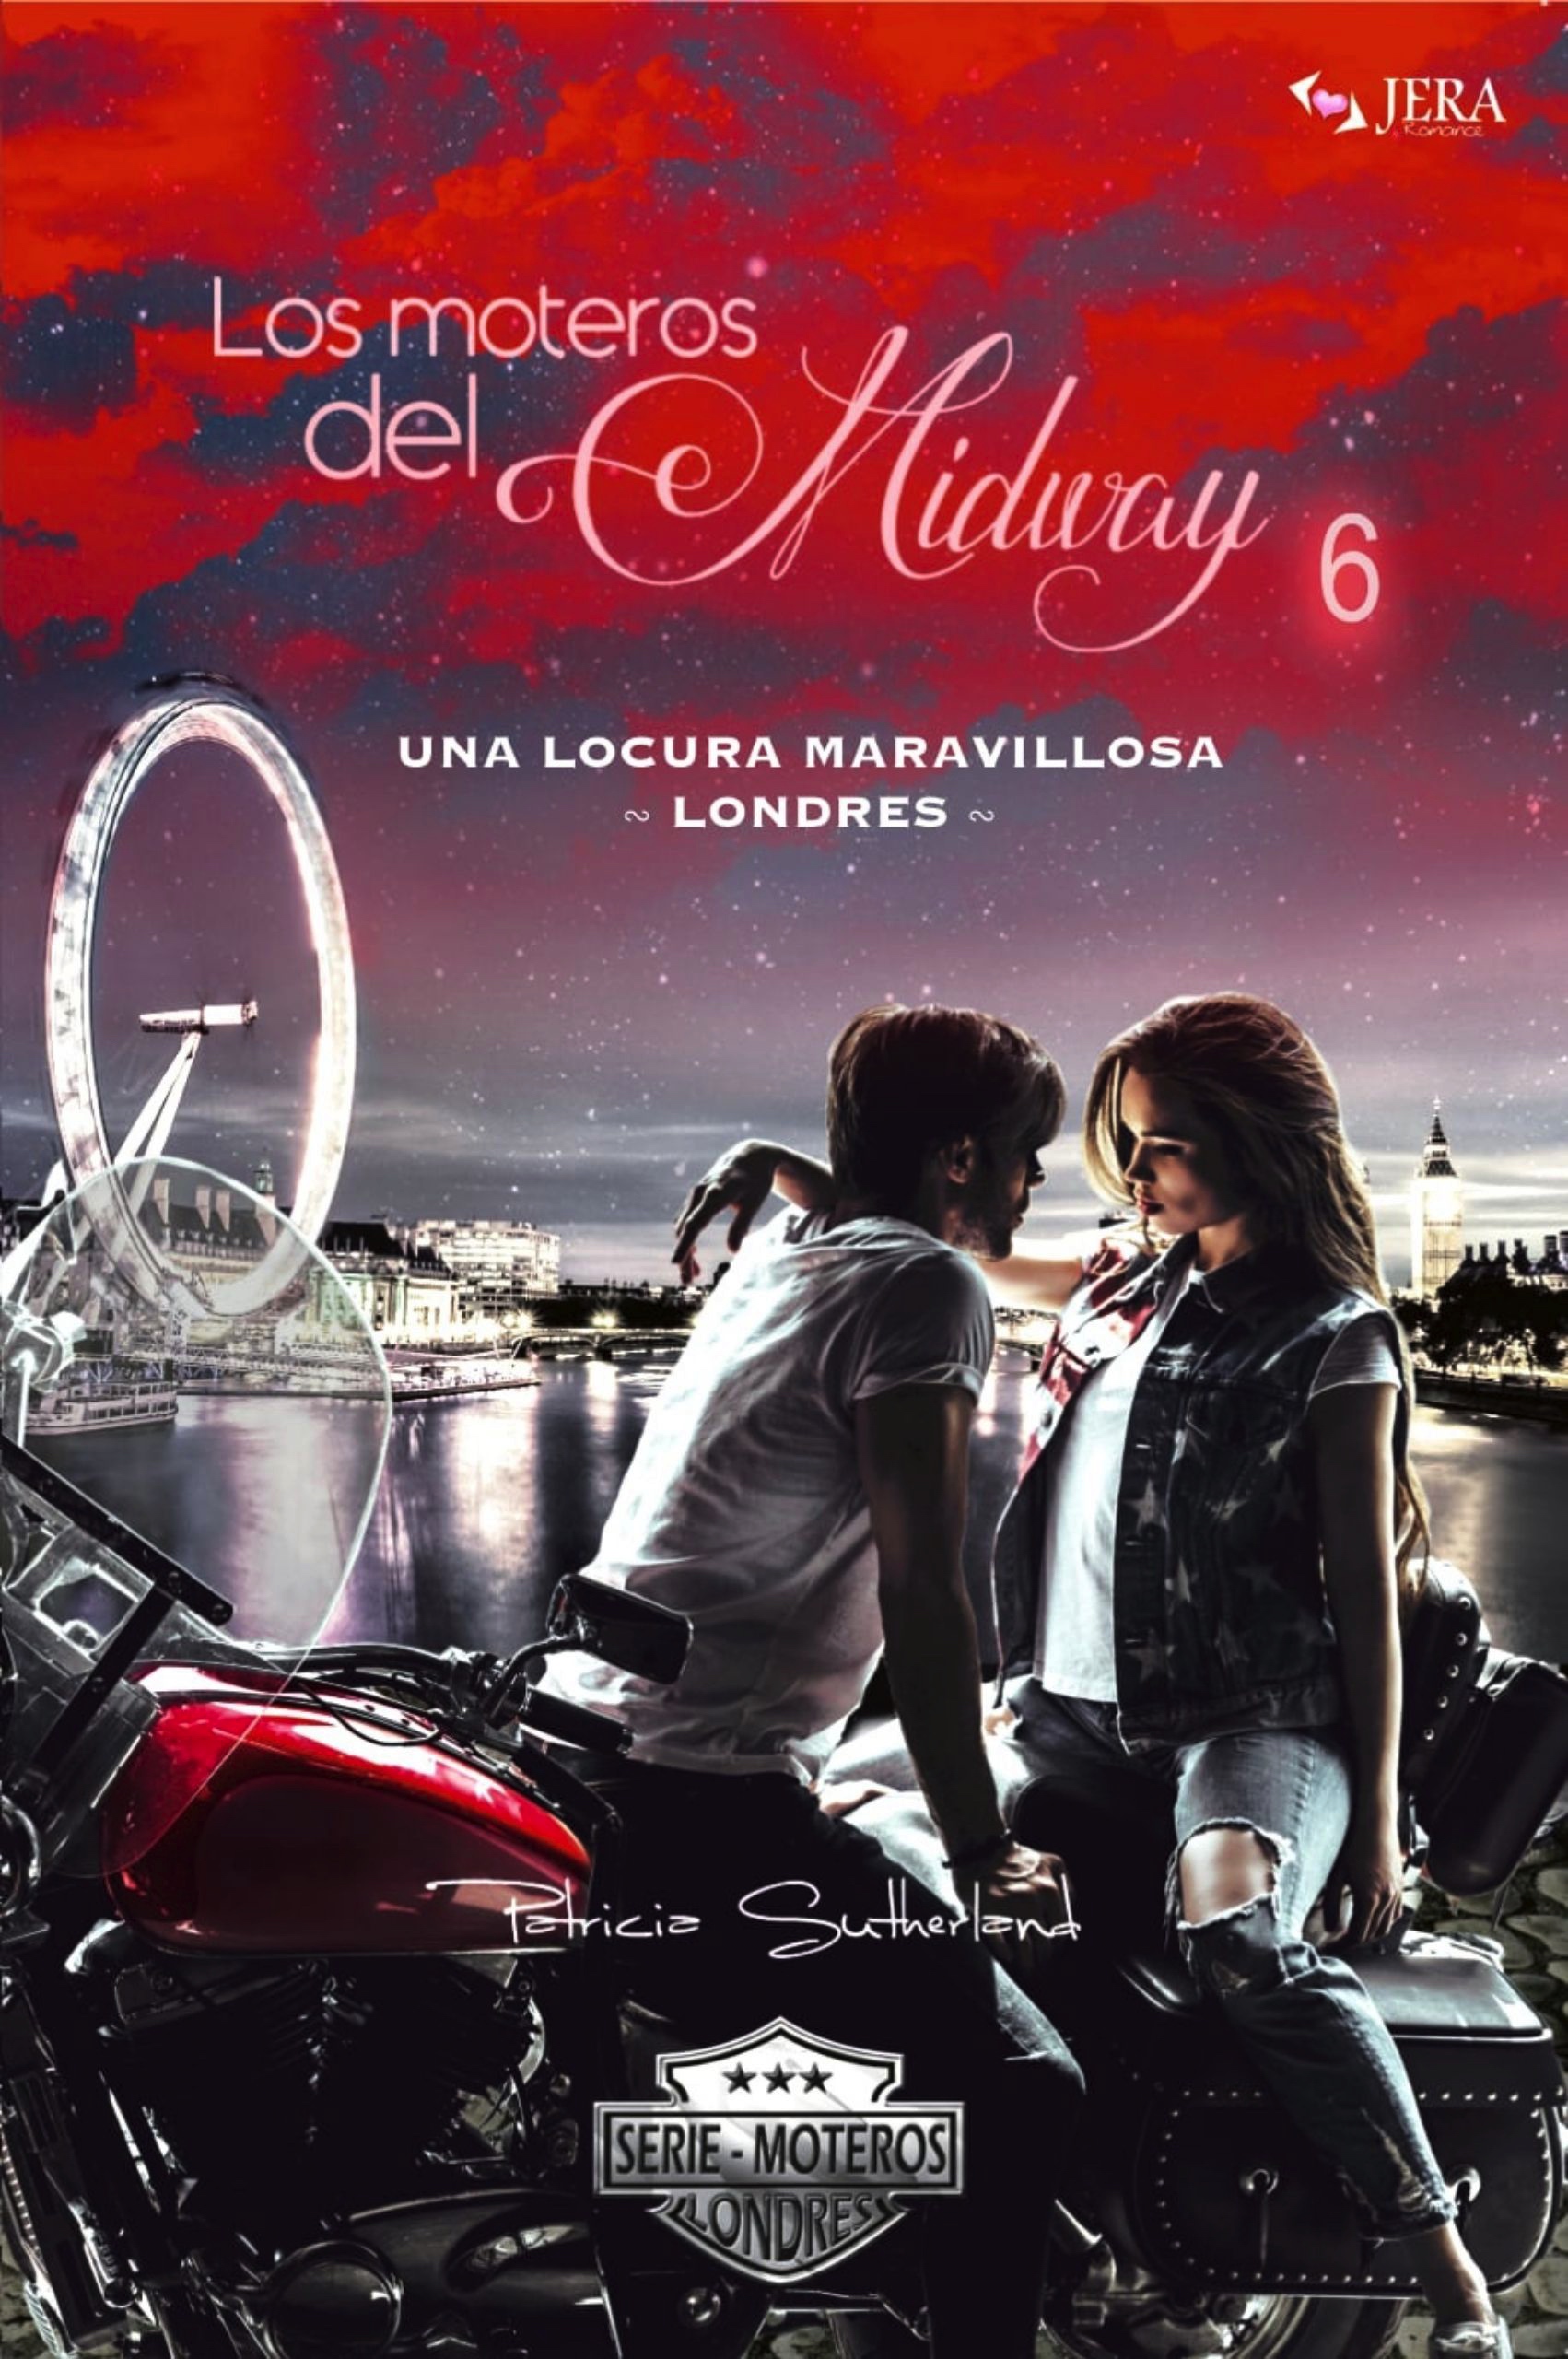 Los moteros del MidWay, 6. Extras Serie Moteros 12.